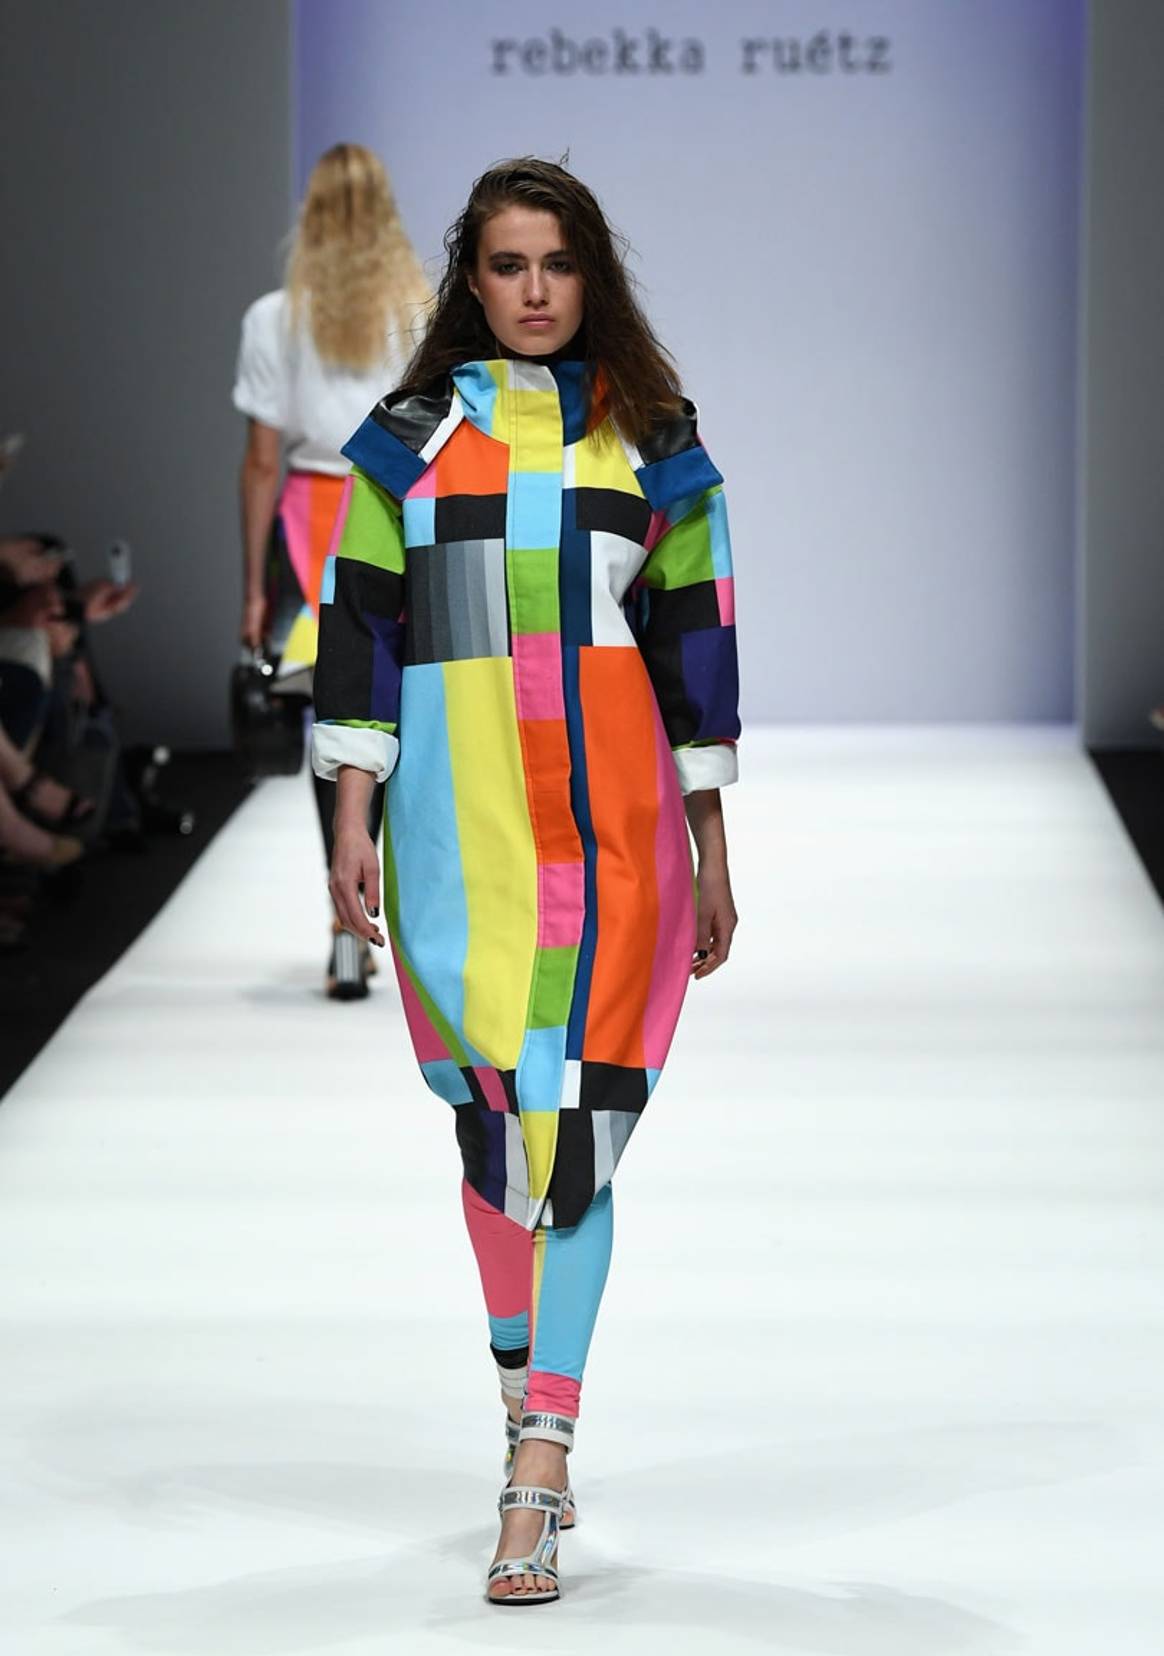 Laurèl, Riani & Co: Berliner Modewoche läuft sich warm